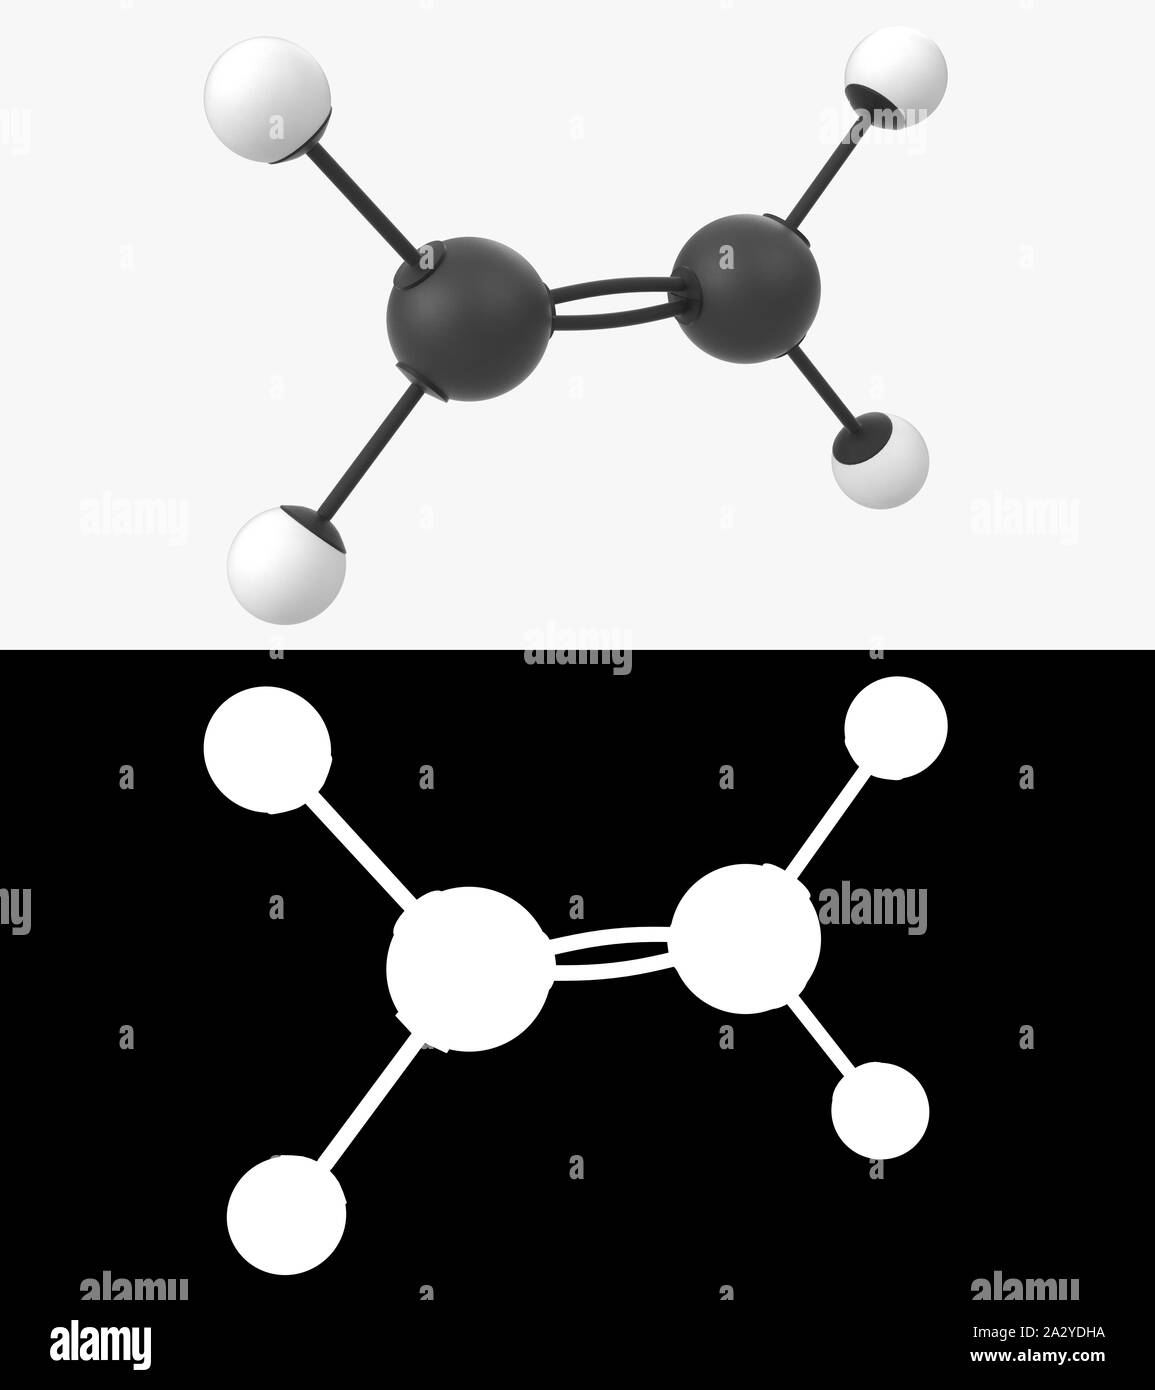 ch2ch2 molecular geometry